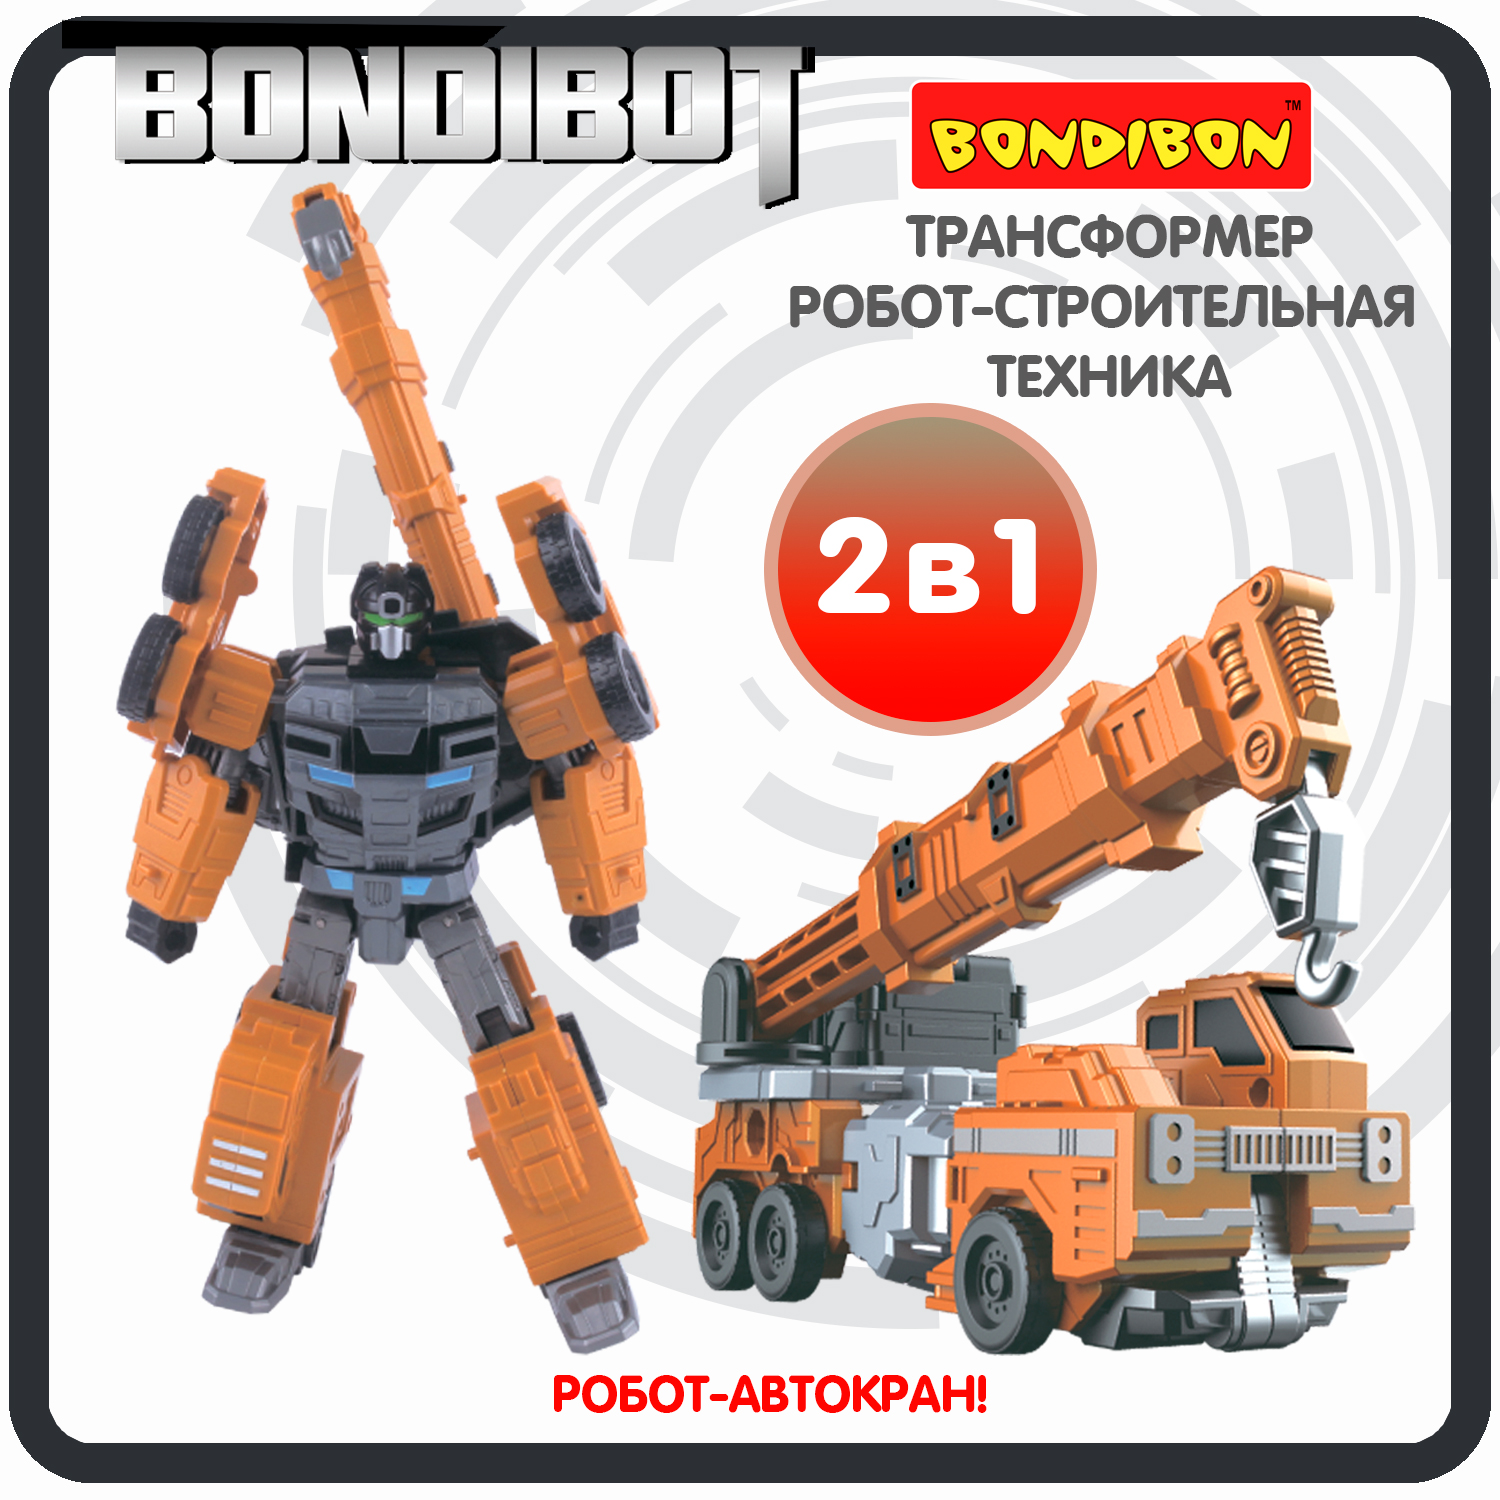 Трансформер робот-строительная техника, 2в1 BONDIBOT Bondibon, автокран / ВВ6056 робот трансформер тобот леон ровер